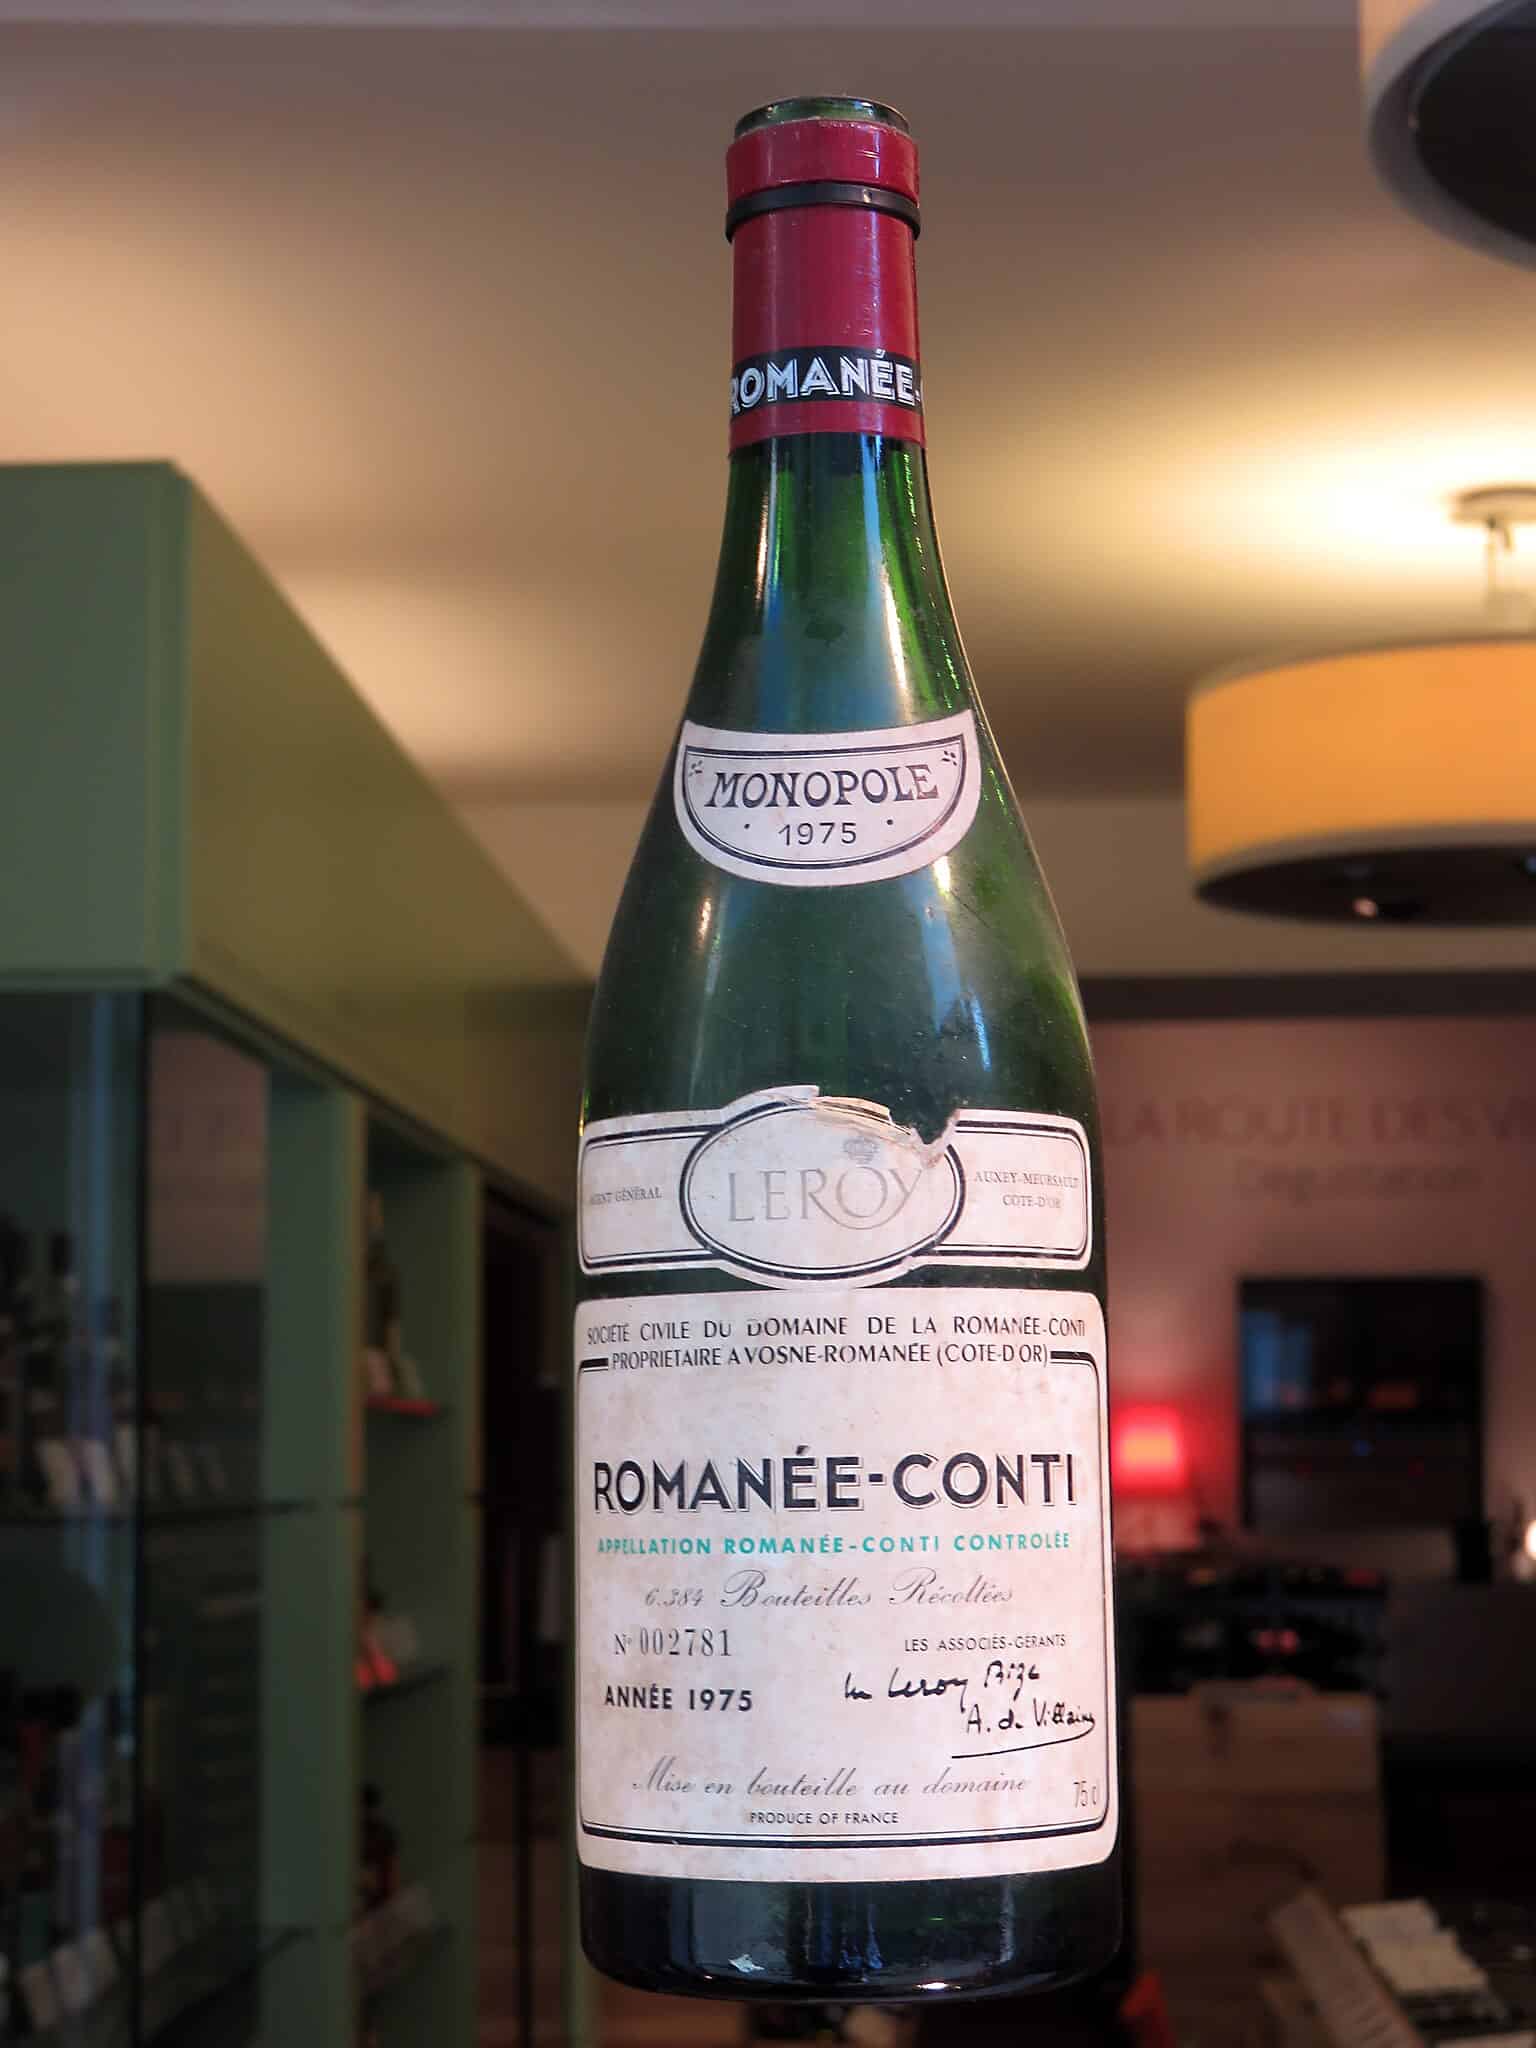 The Romanée-Conti Collection